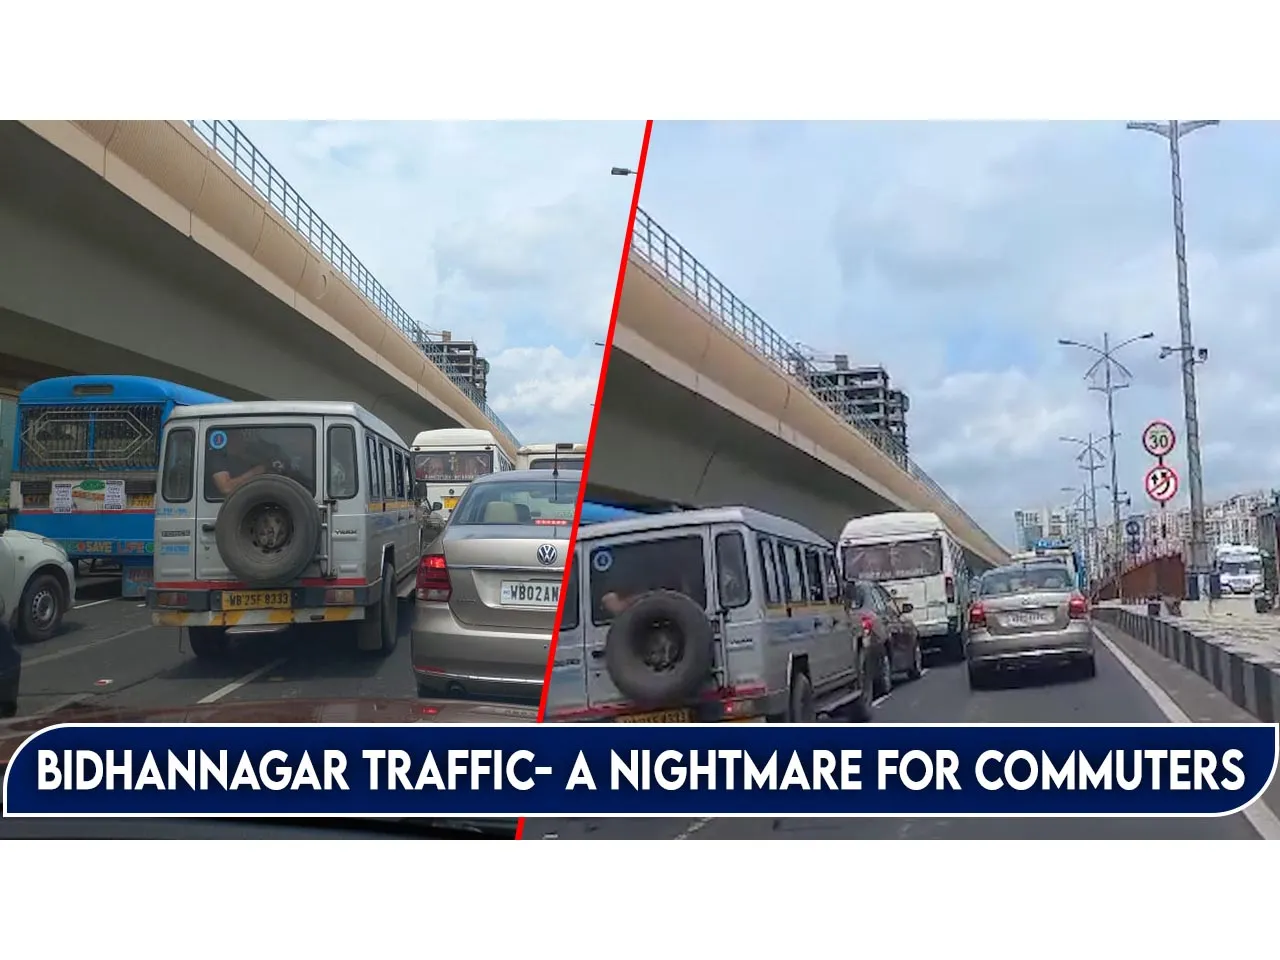 Bidhannagar traffic- a nightmare for commuters